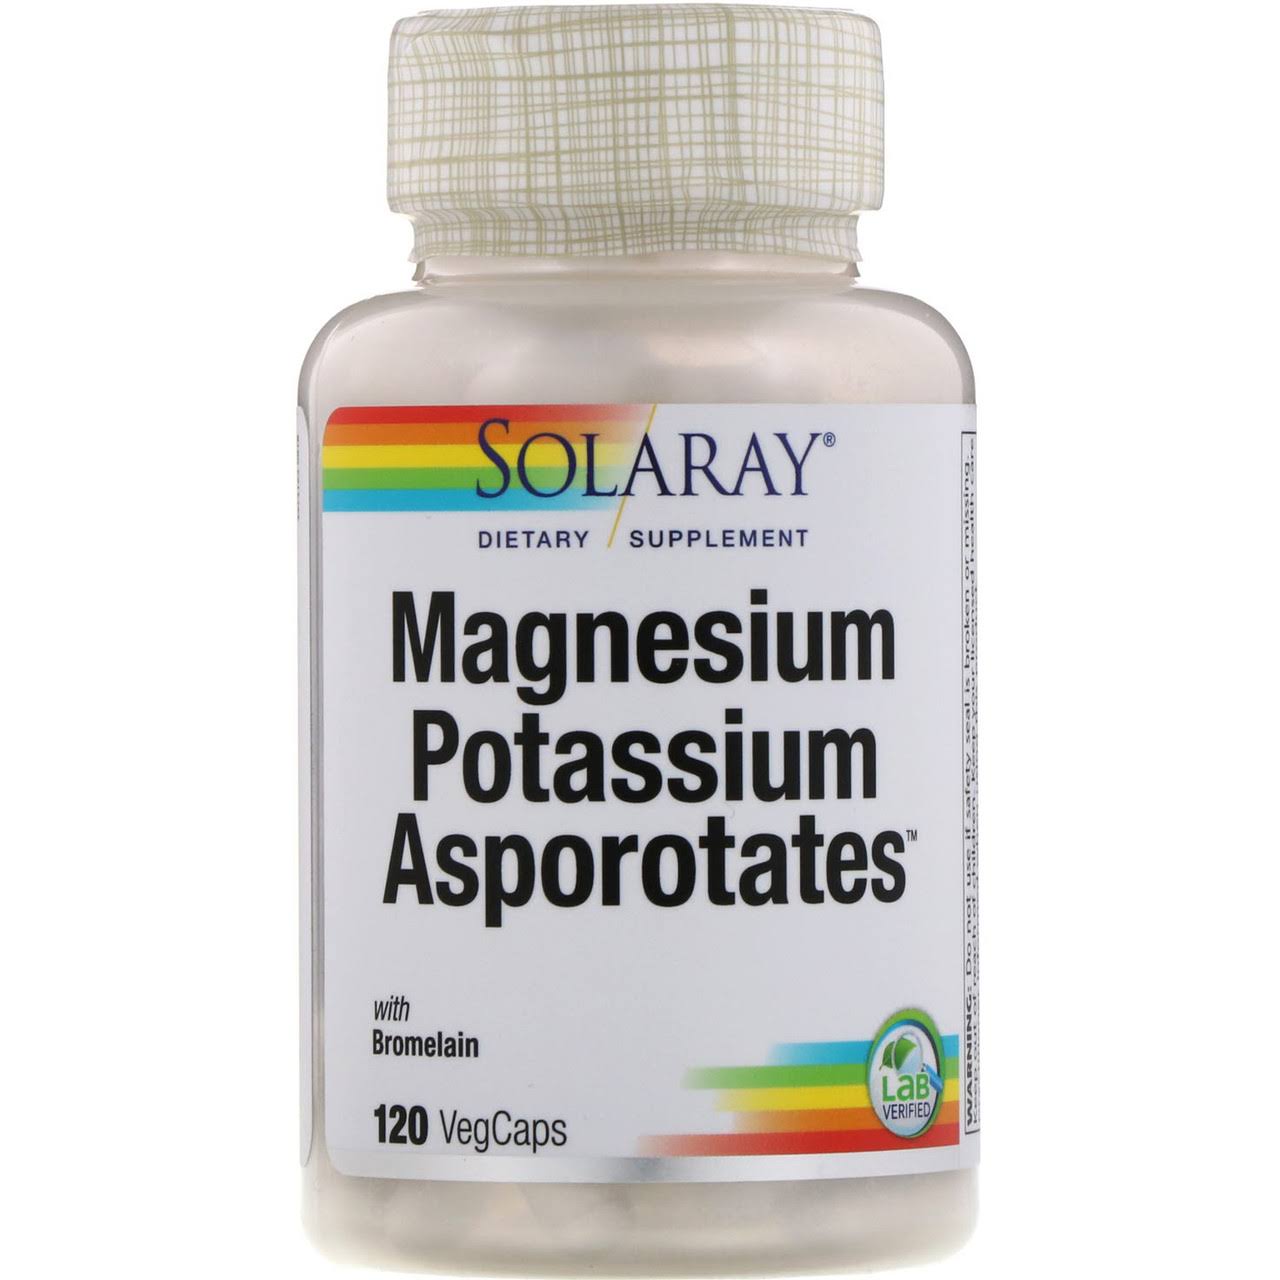 Solaray Magnesium and Potassium Asporotates Supplement - 120 Veggie Caps